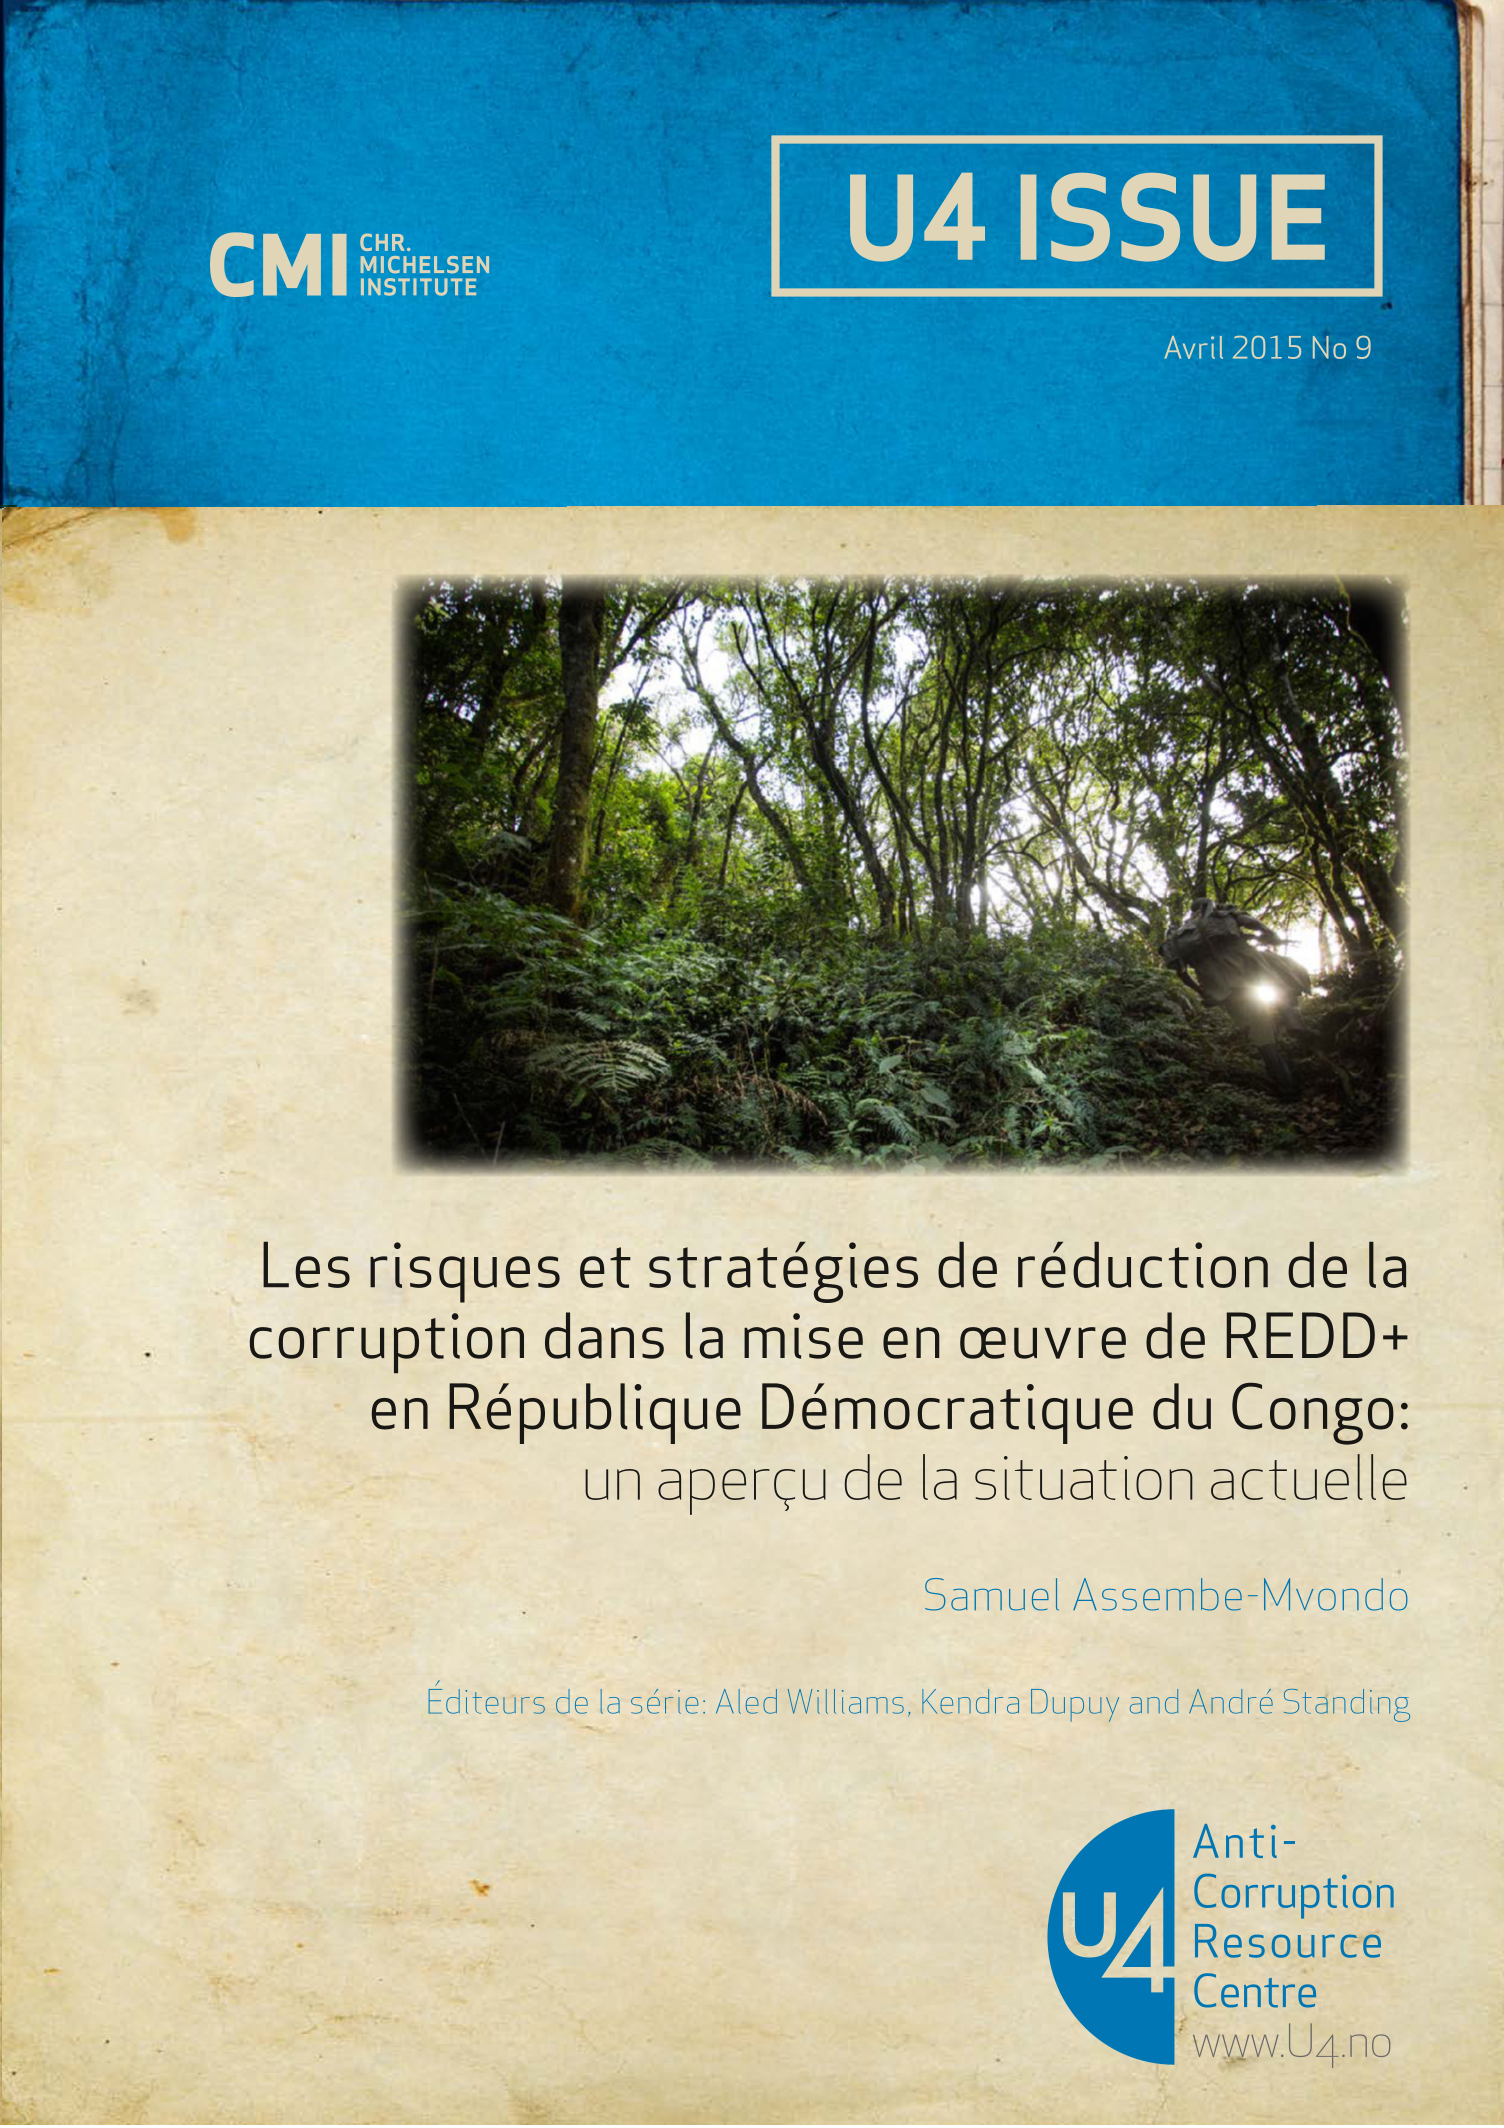 Les risques et stratégies de réduction de la corruption dans la mise en œuvre de REDD+ en République Démocratique du Congo: un aperçu de la situation actuelle